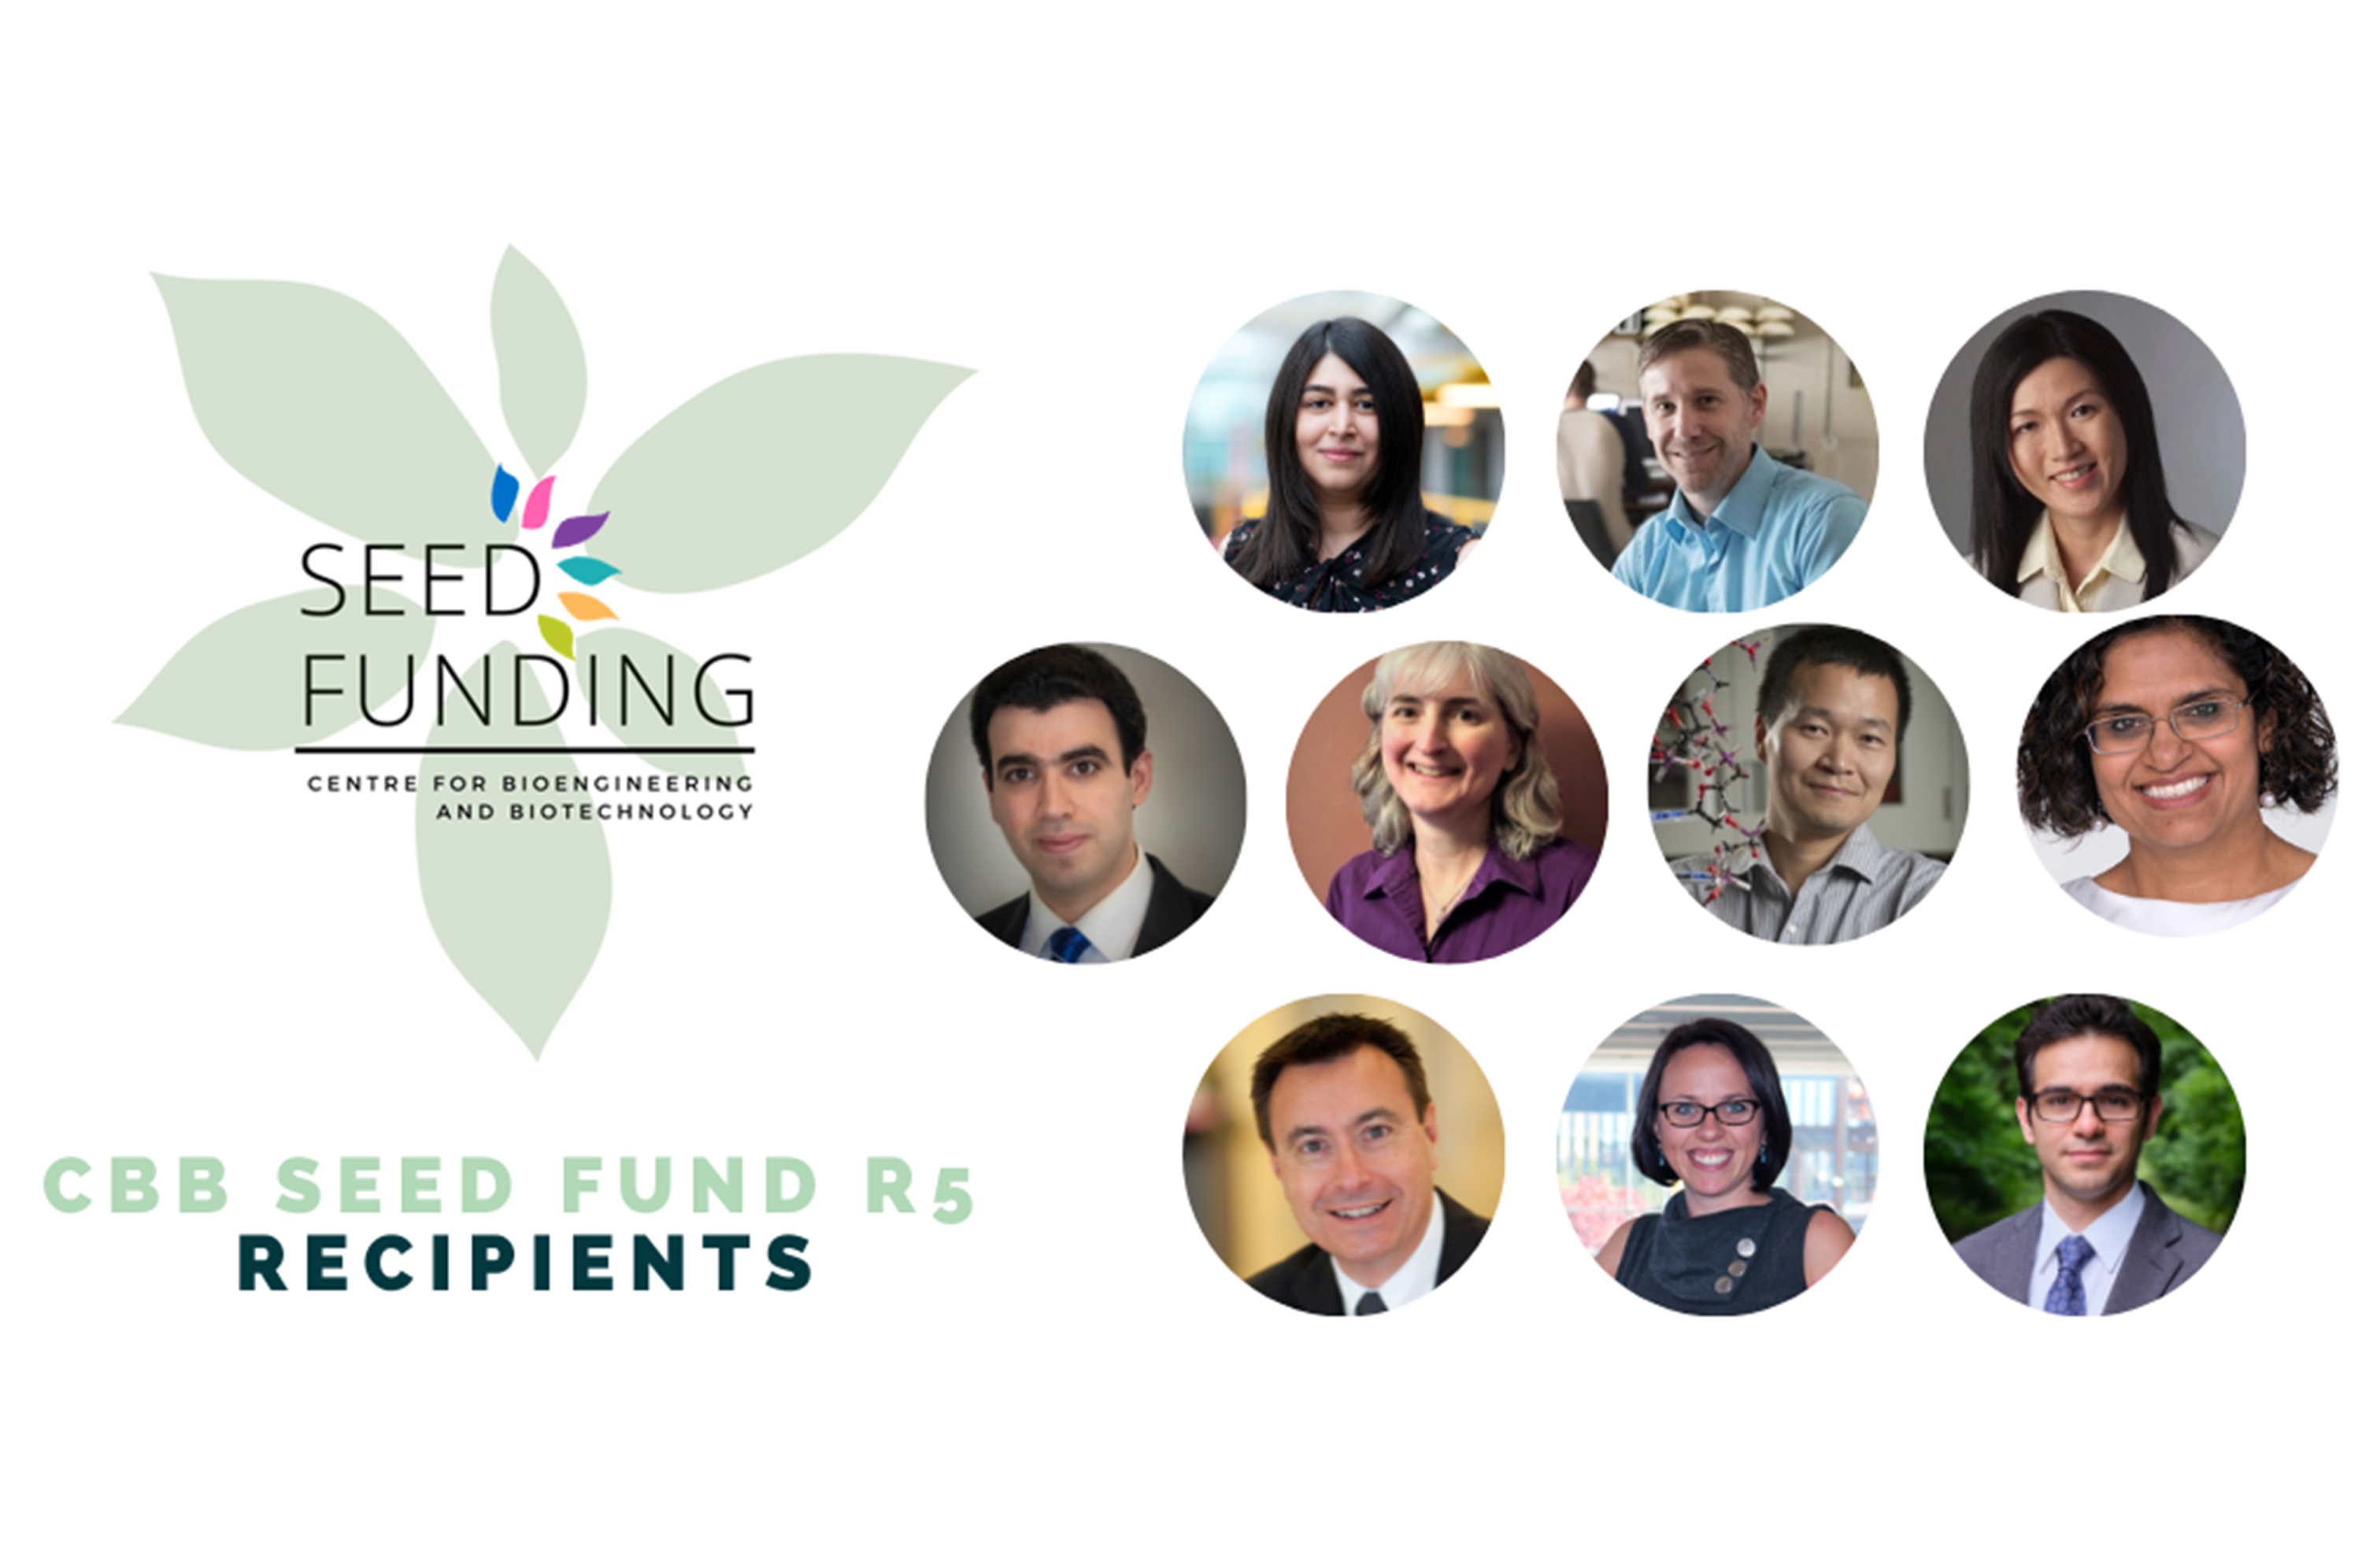 Seed Fund Round 5 recipients